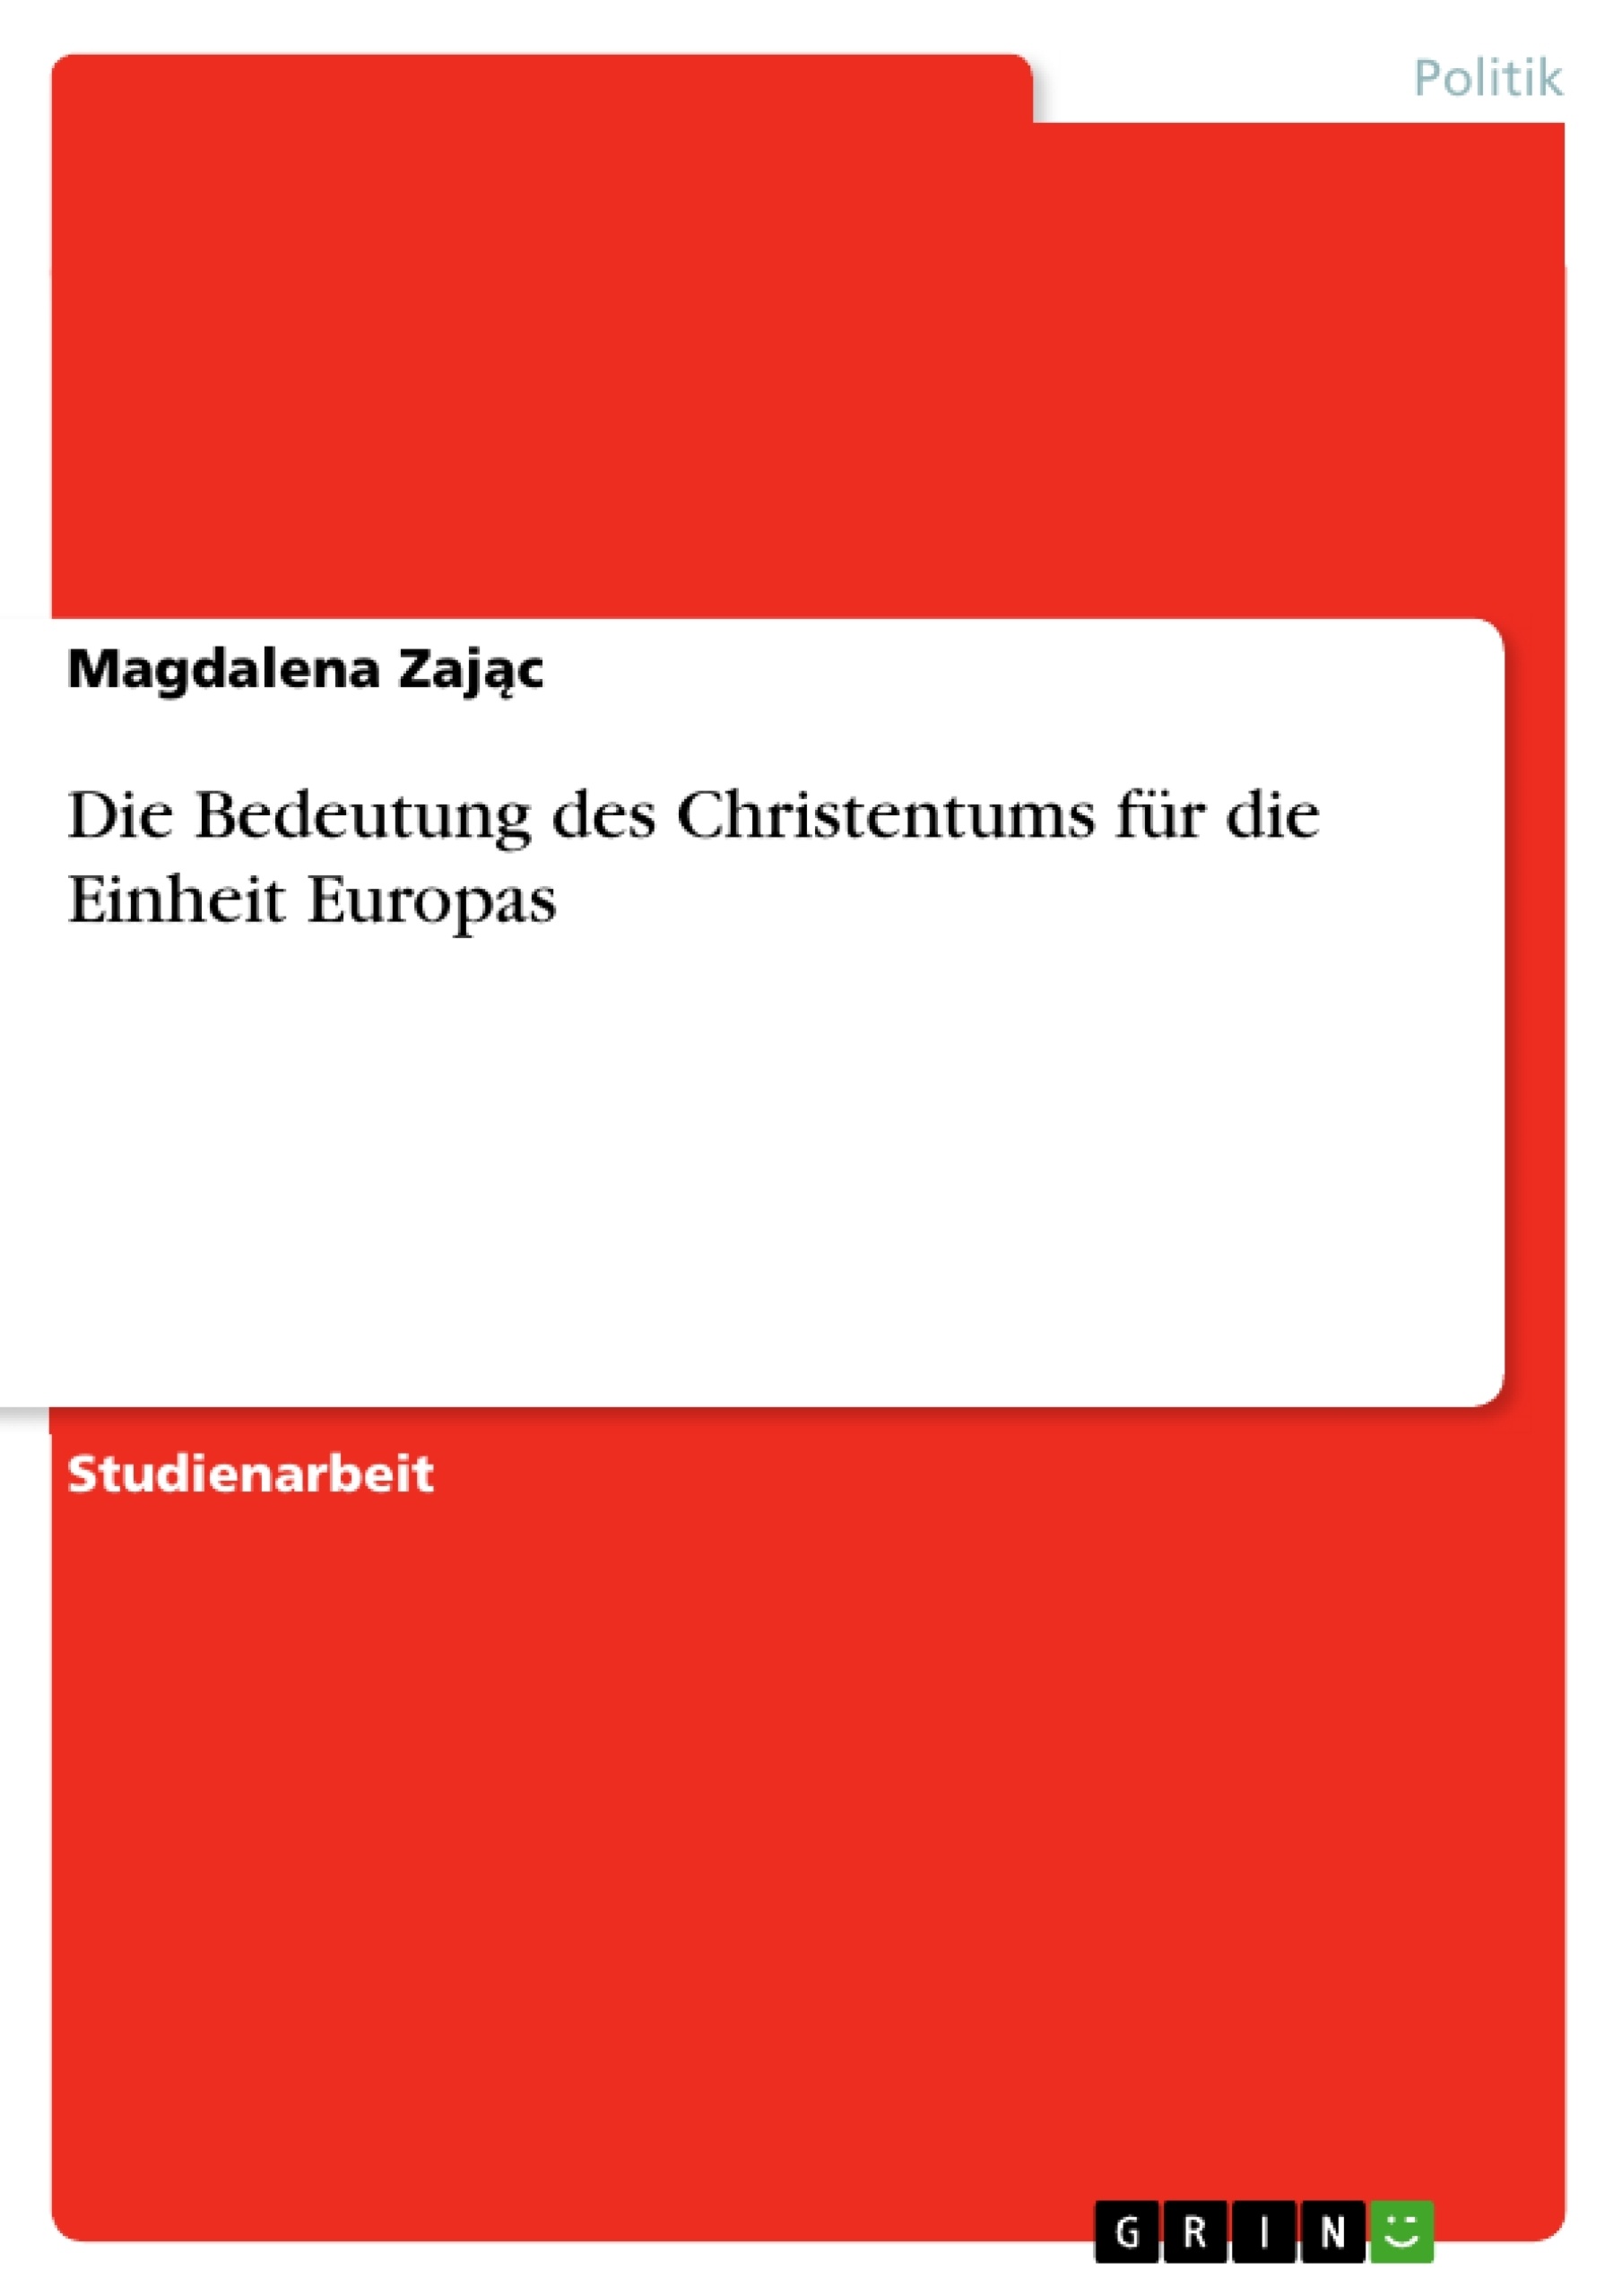 Título: Die Bedeutung des Christentums für die Einheit Europas